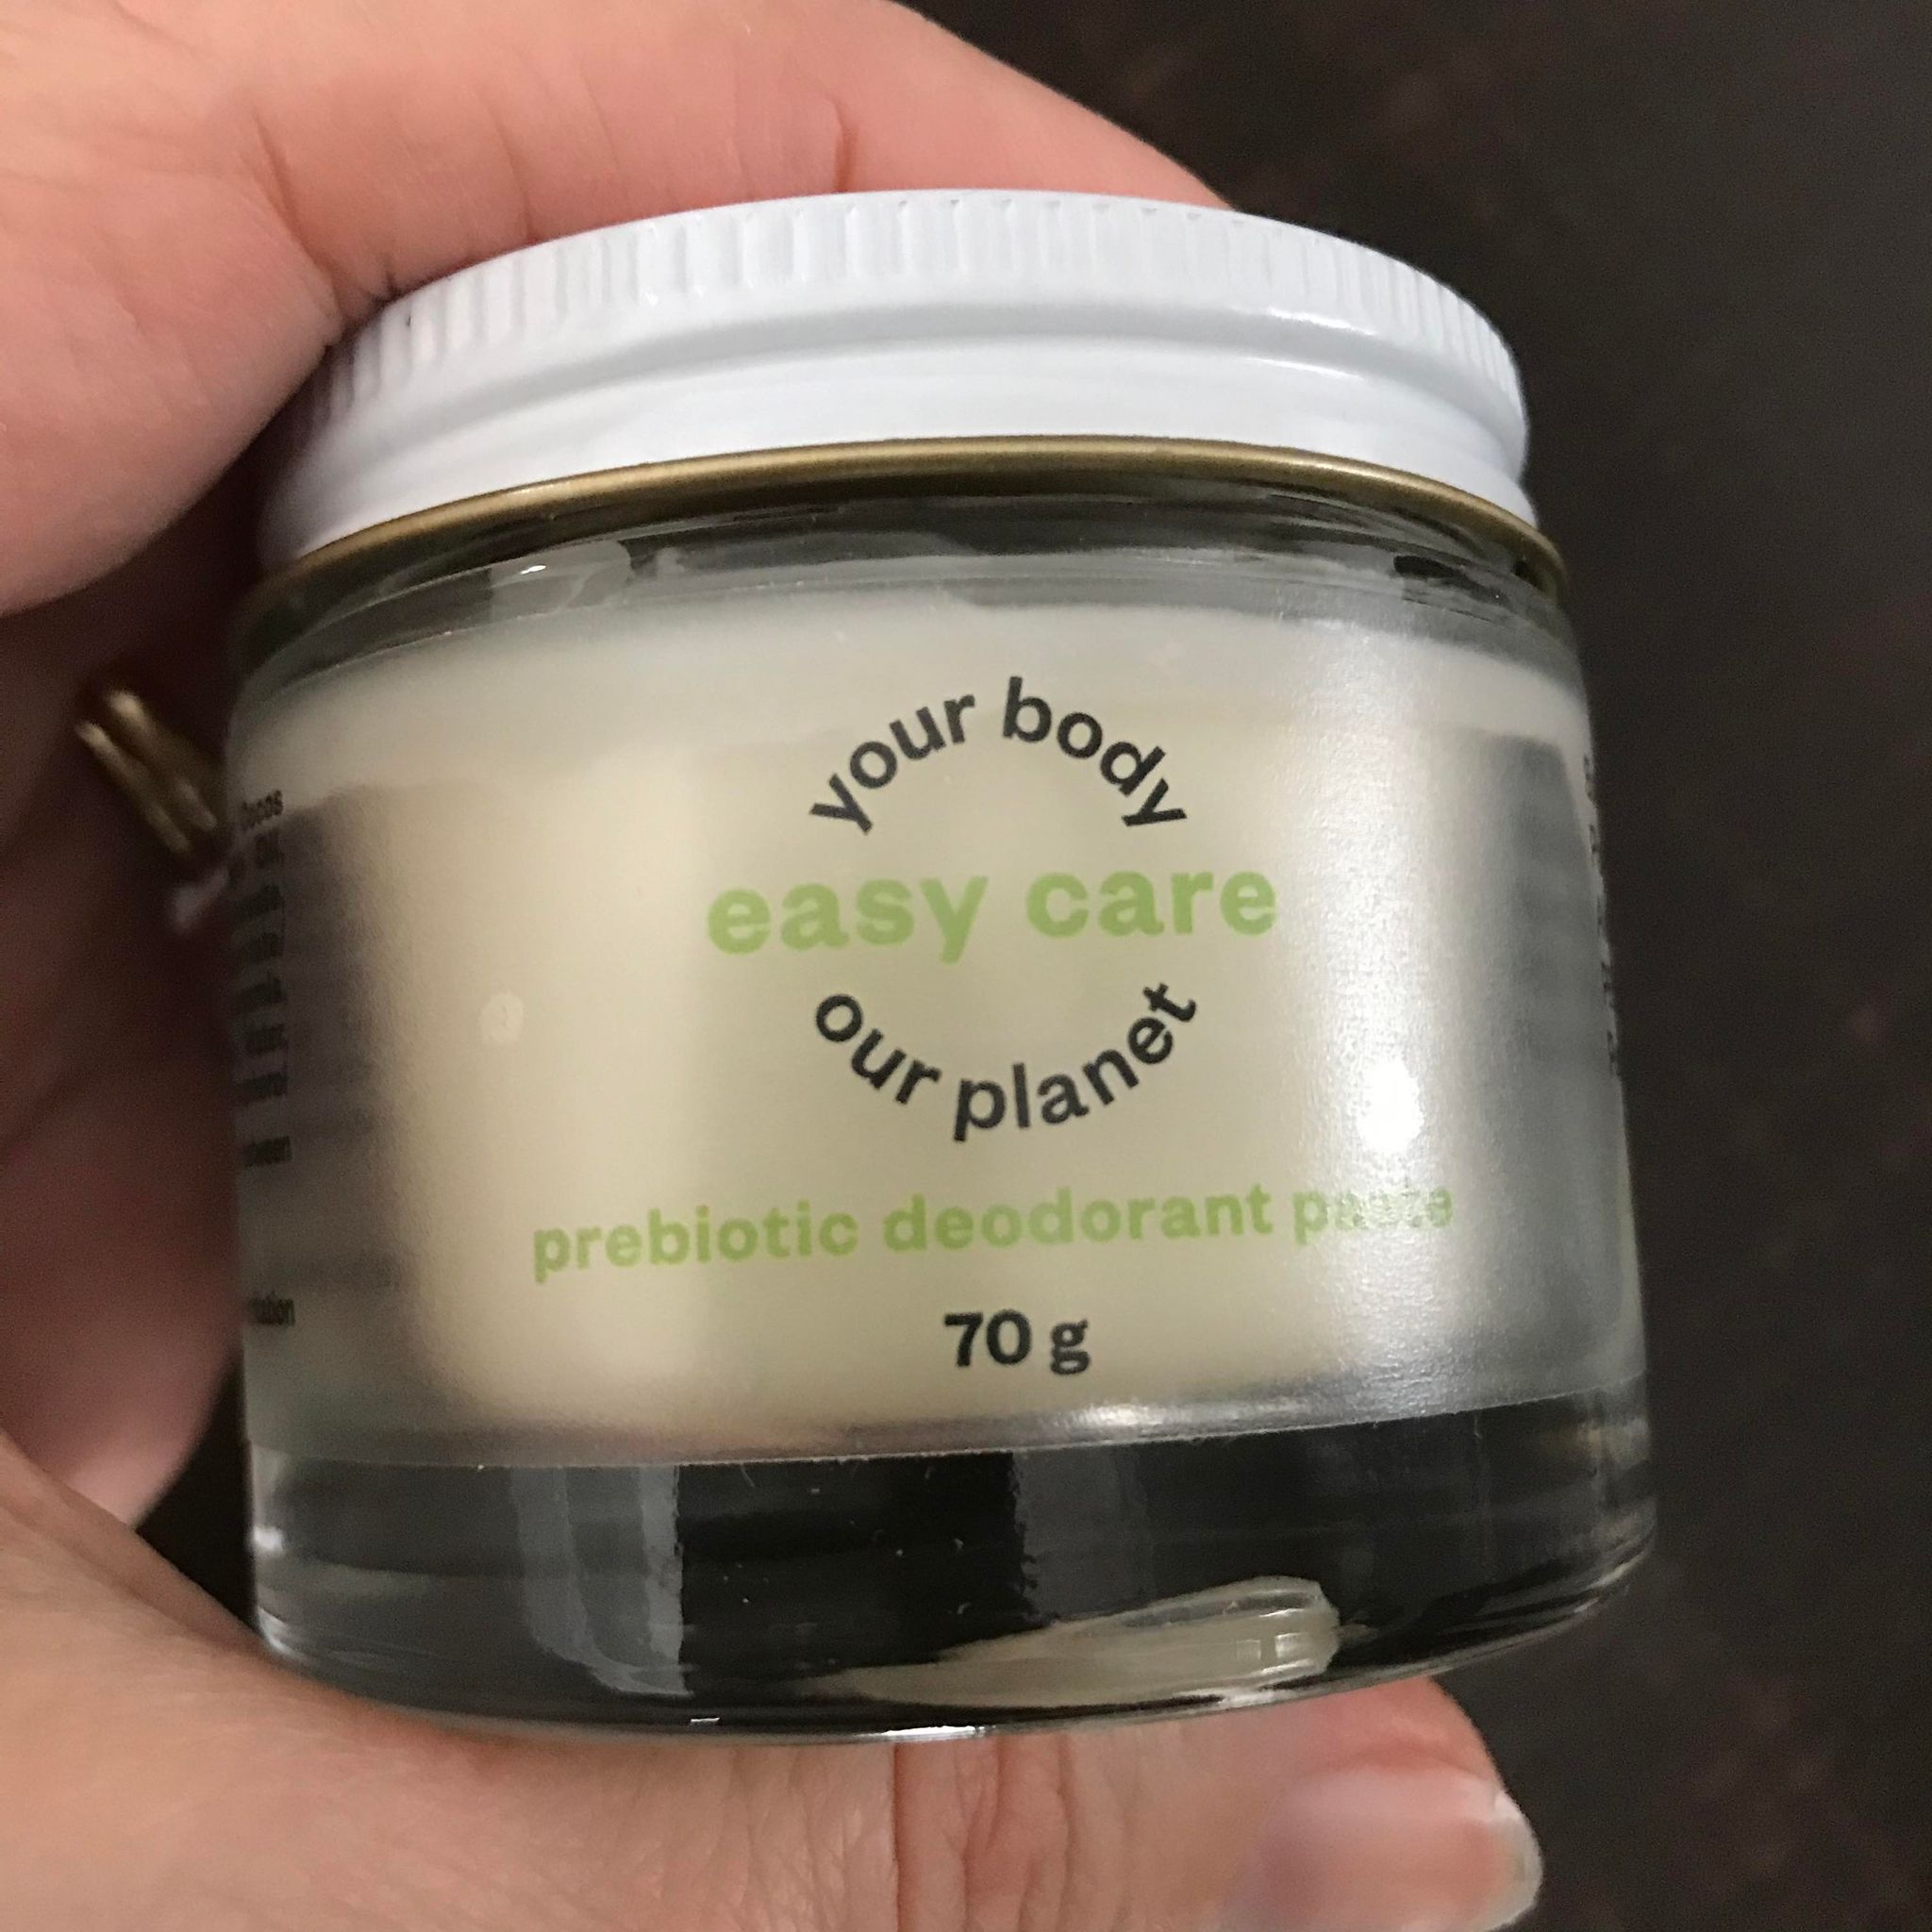 Bergamot pine citrus prebiotic deodorant paste made in Canada by etee